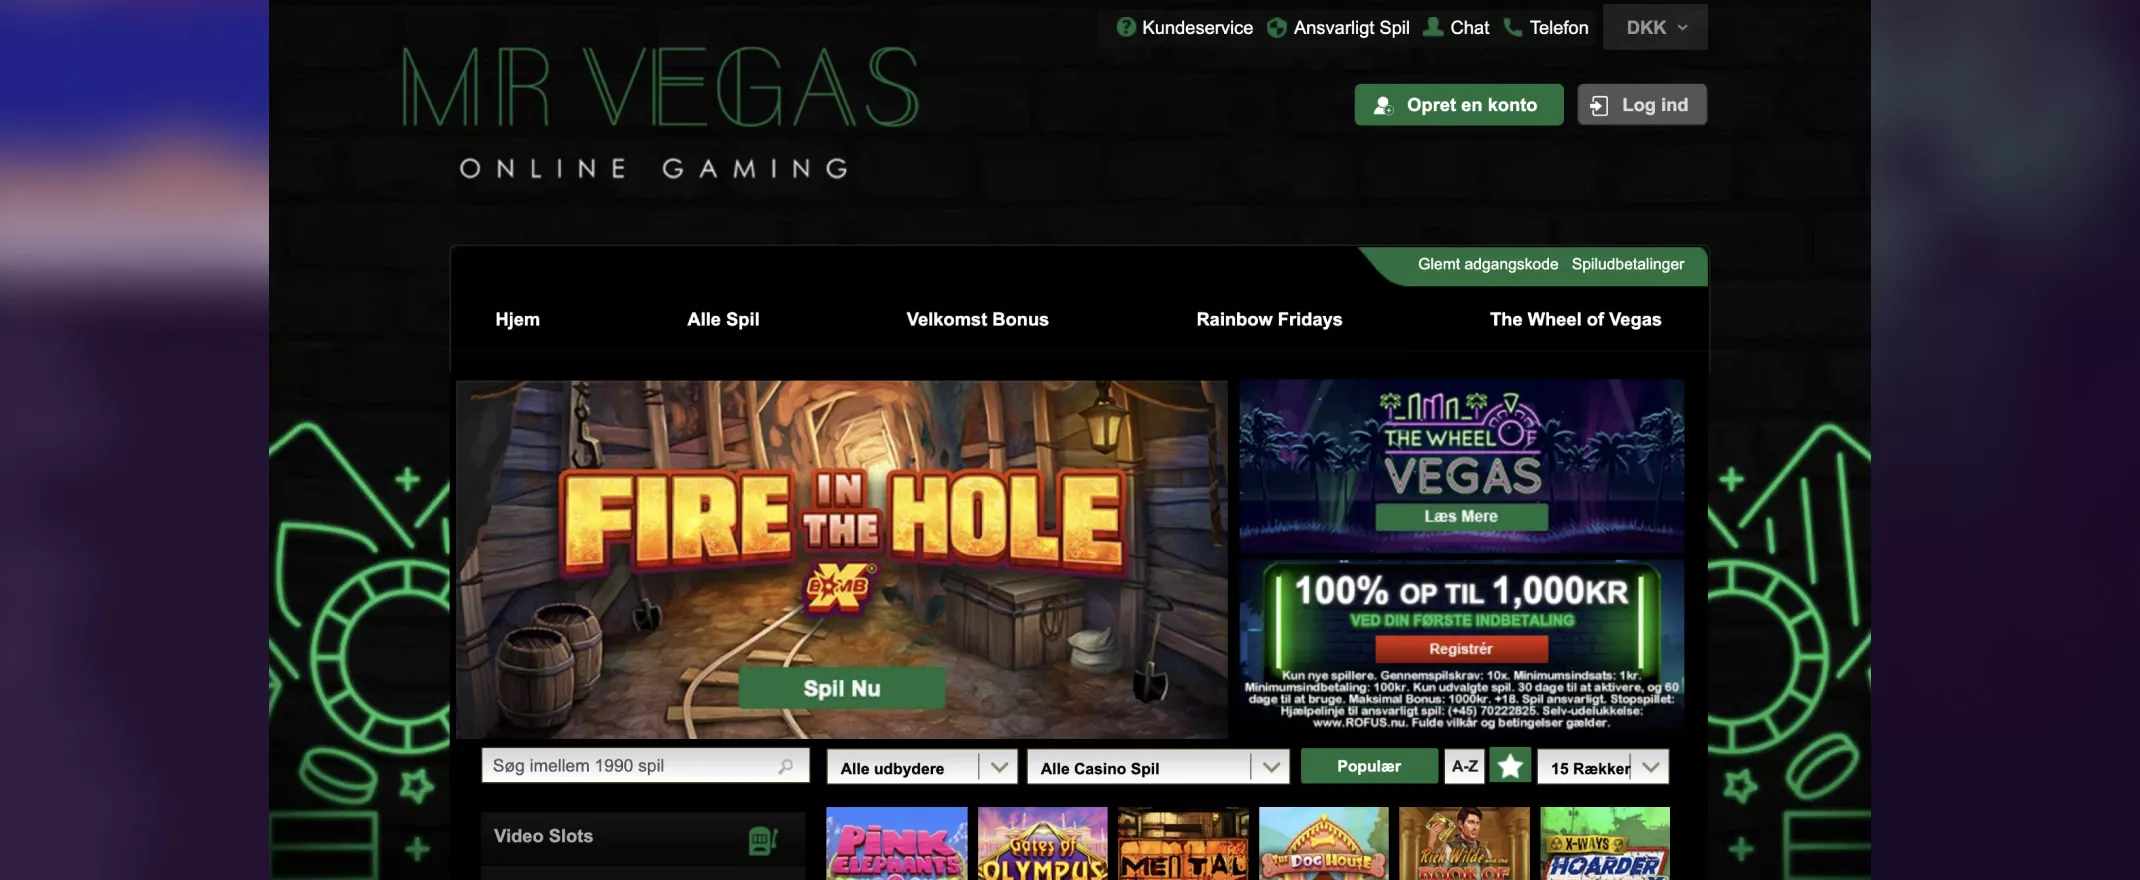 Mr Vegas websted